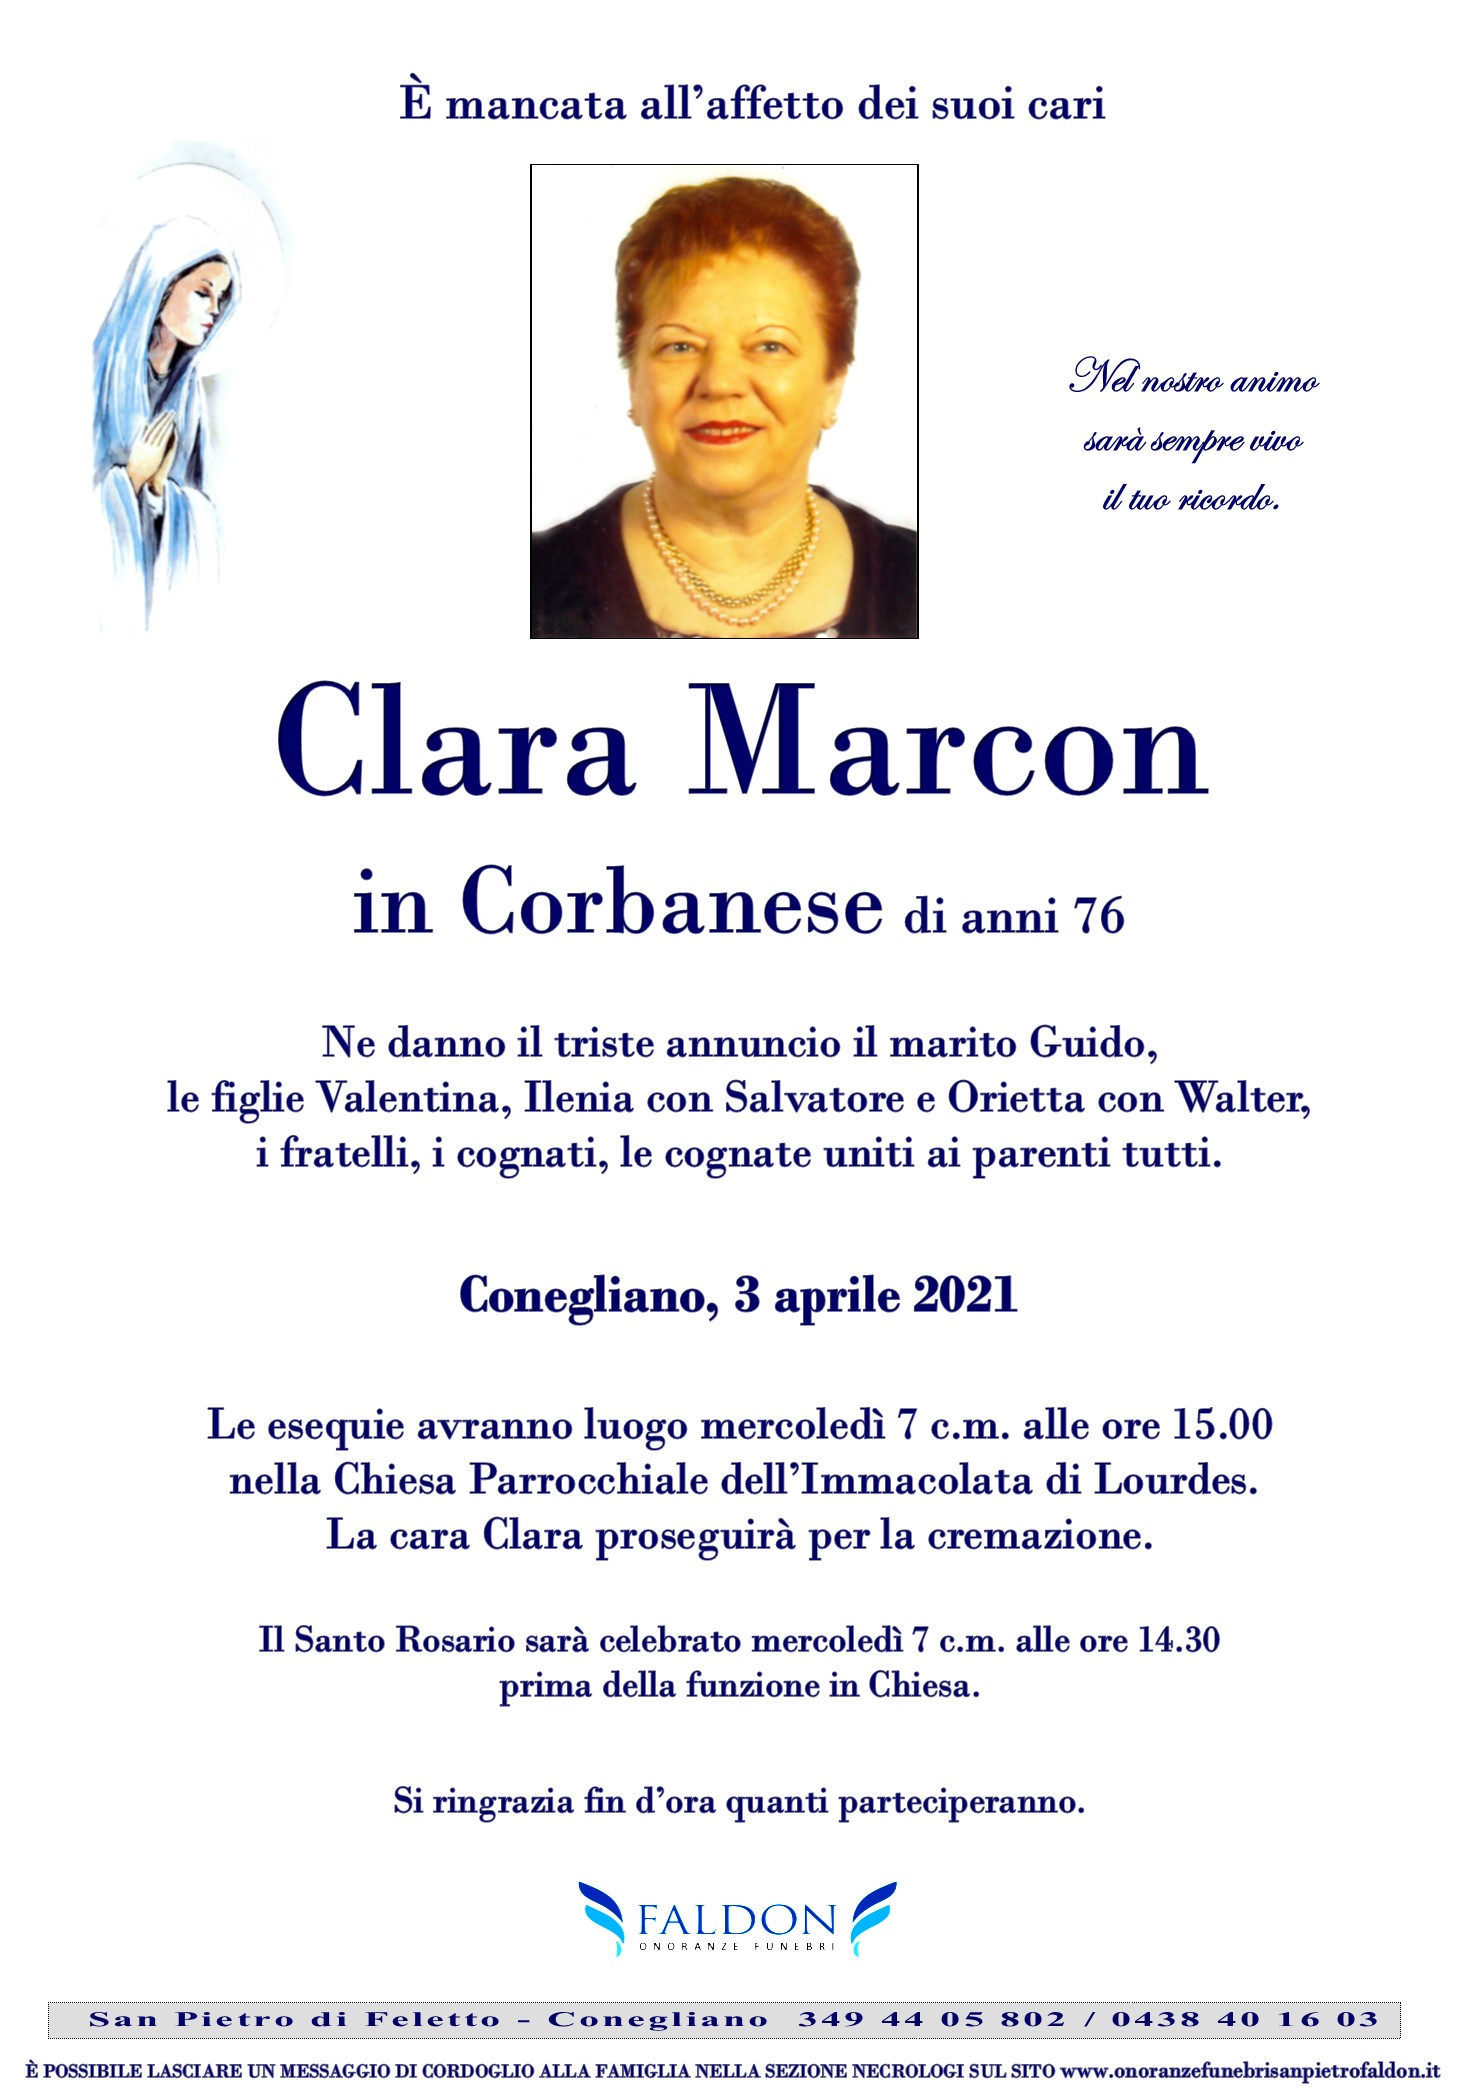 Clara Marcon